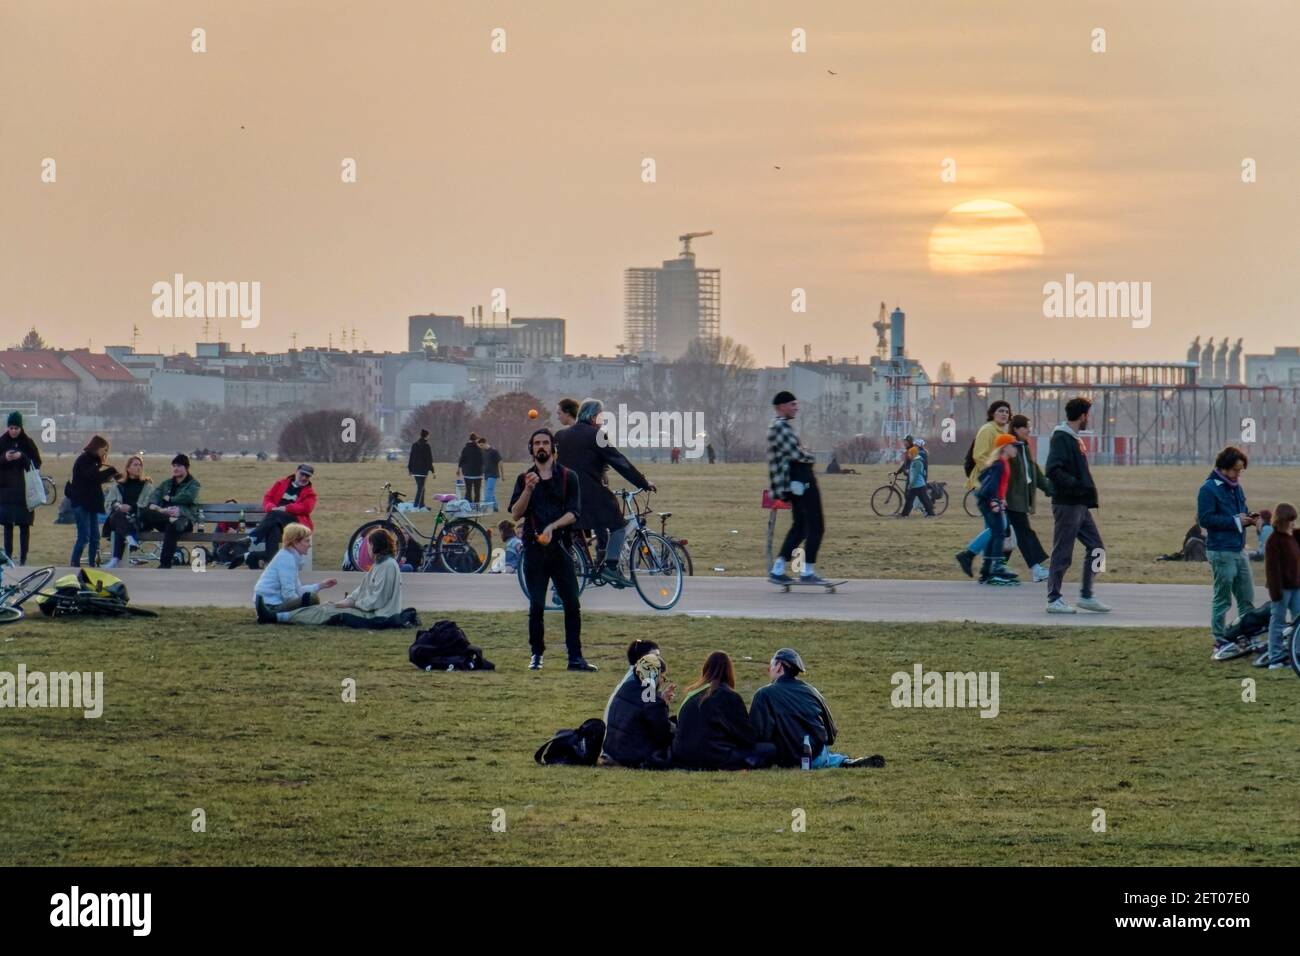 Vorfruehling Mitte Februar 2021 in Berlin, Tempelhofer Feld, Menschen bei Freizeitaktivitaeten  auf der Startbahn und Landebahn auf dem ehemaligen Flu Stock Photo